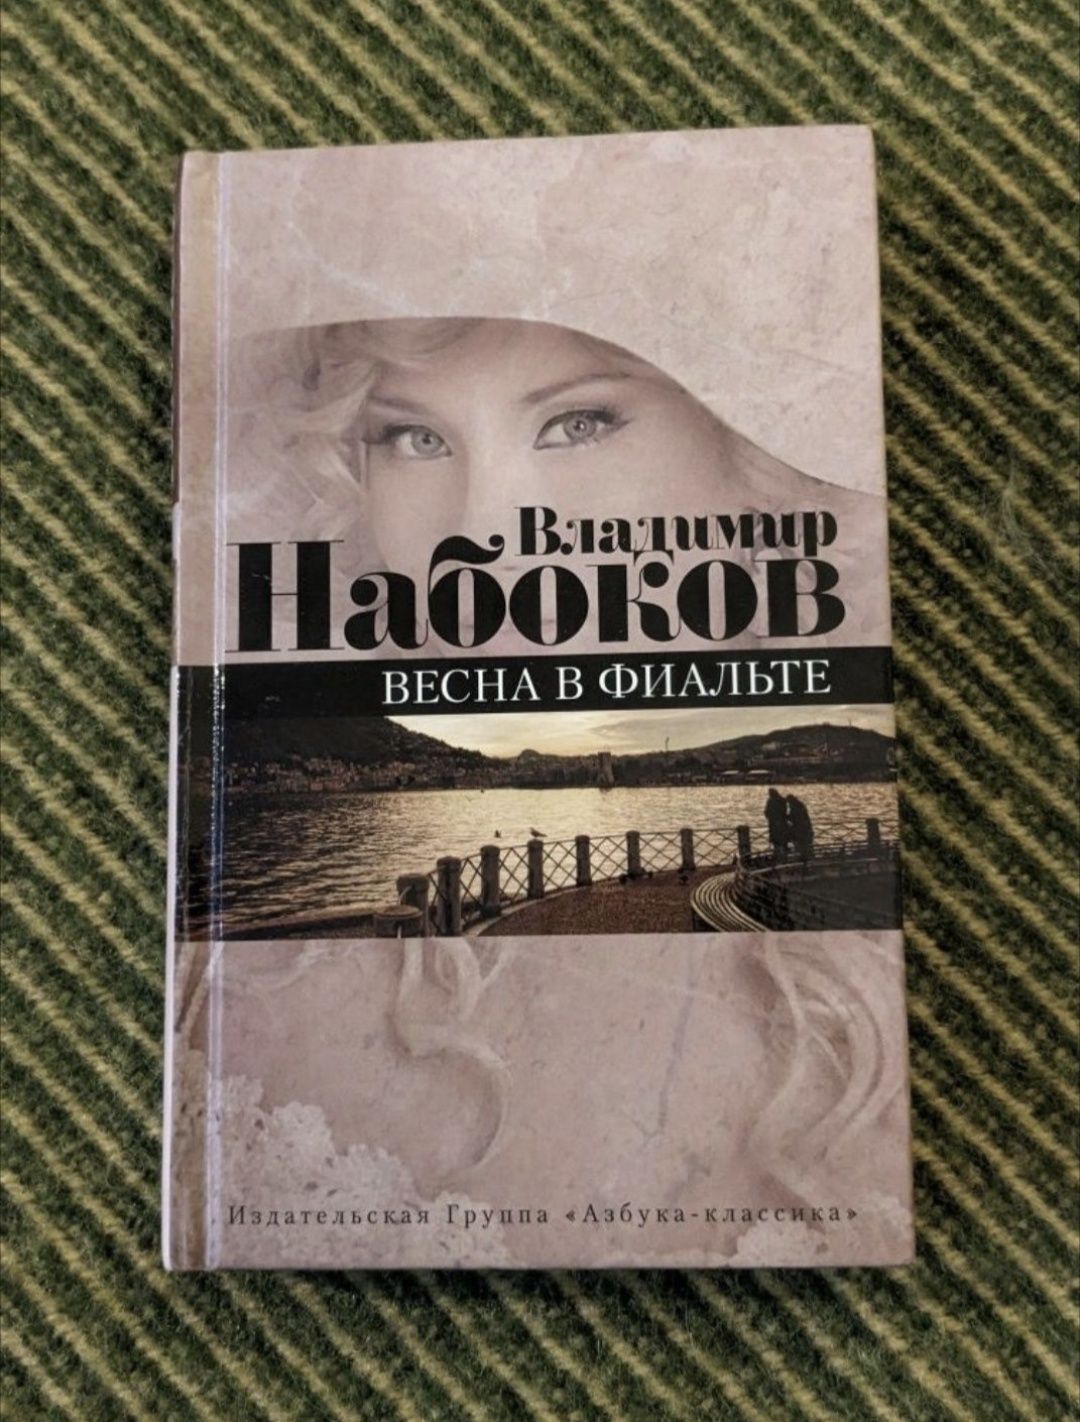 Книги В. Набокова